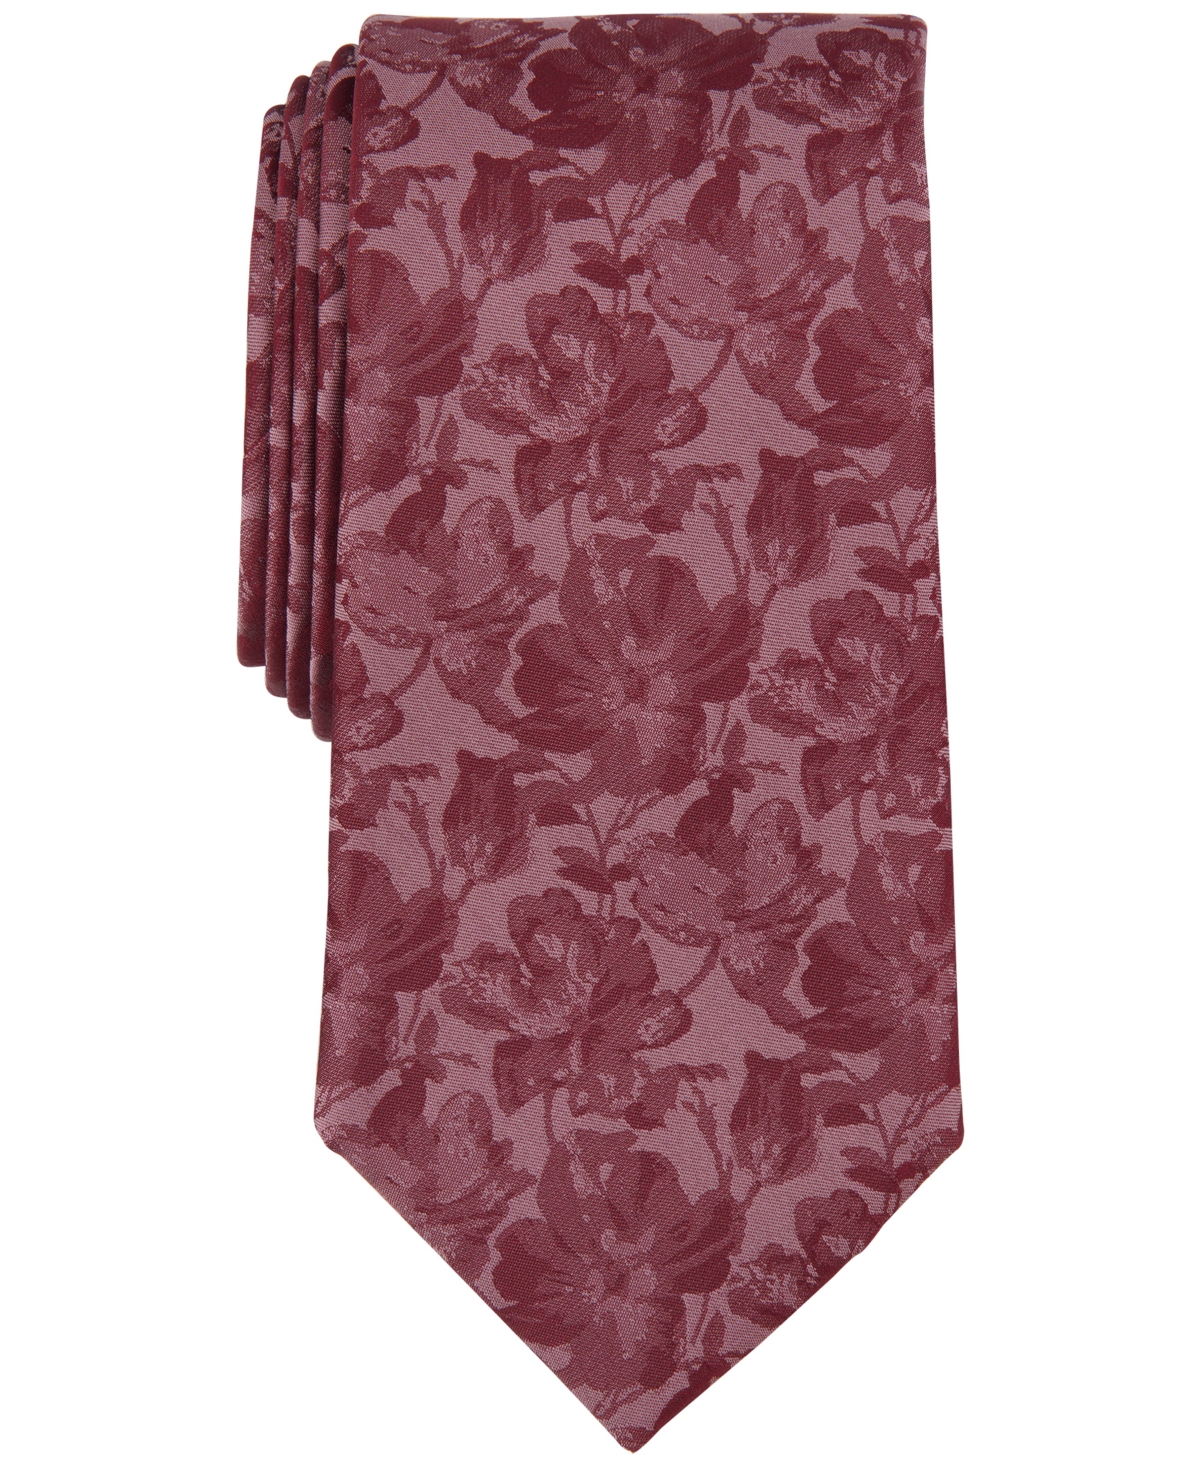 Michael Kors Men's Carman Classic Floral Tie In Rose